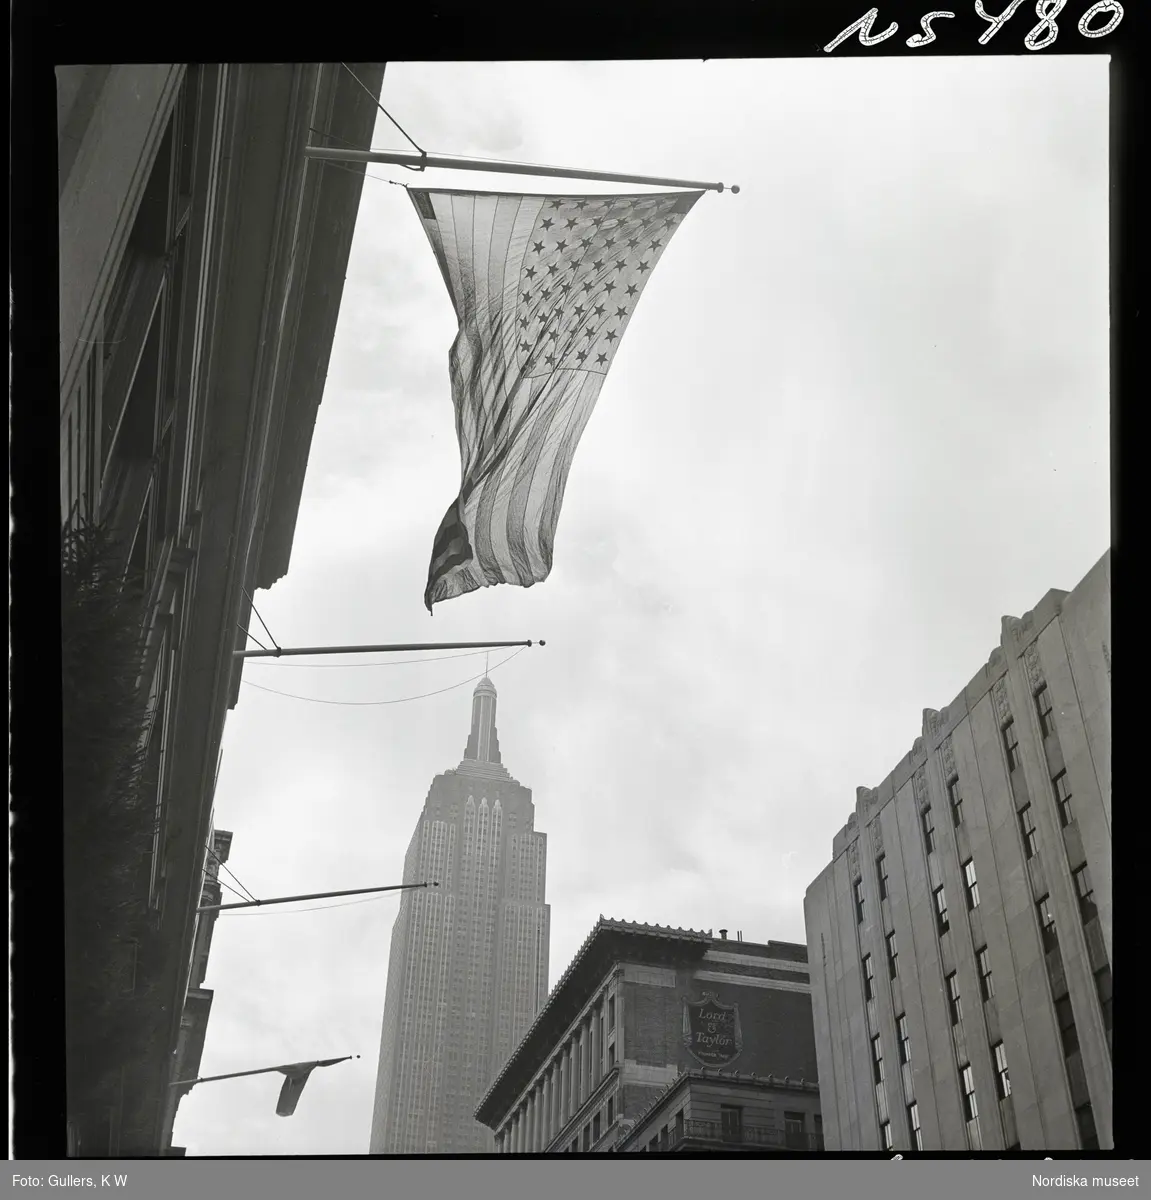 1690 New York allmänt (N.Y. Herald Tribune). Gatubild. Amerikansk flagga hänger från fasad, Empire state buildning i bakgrunden.